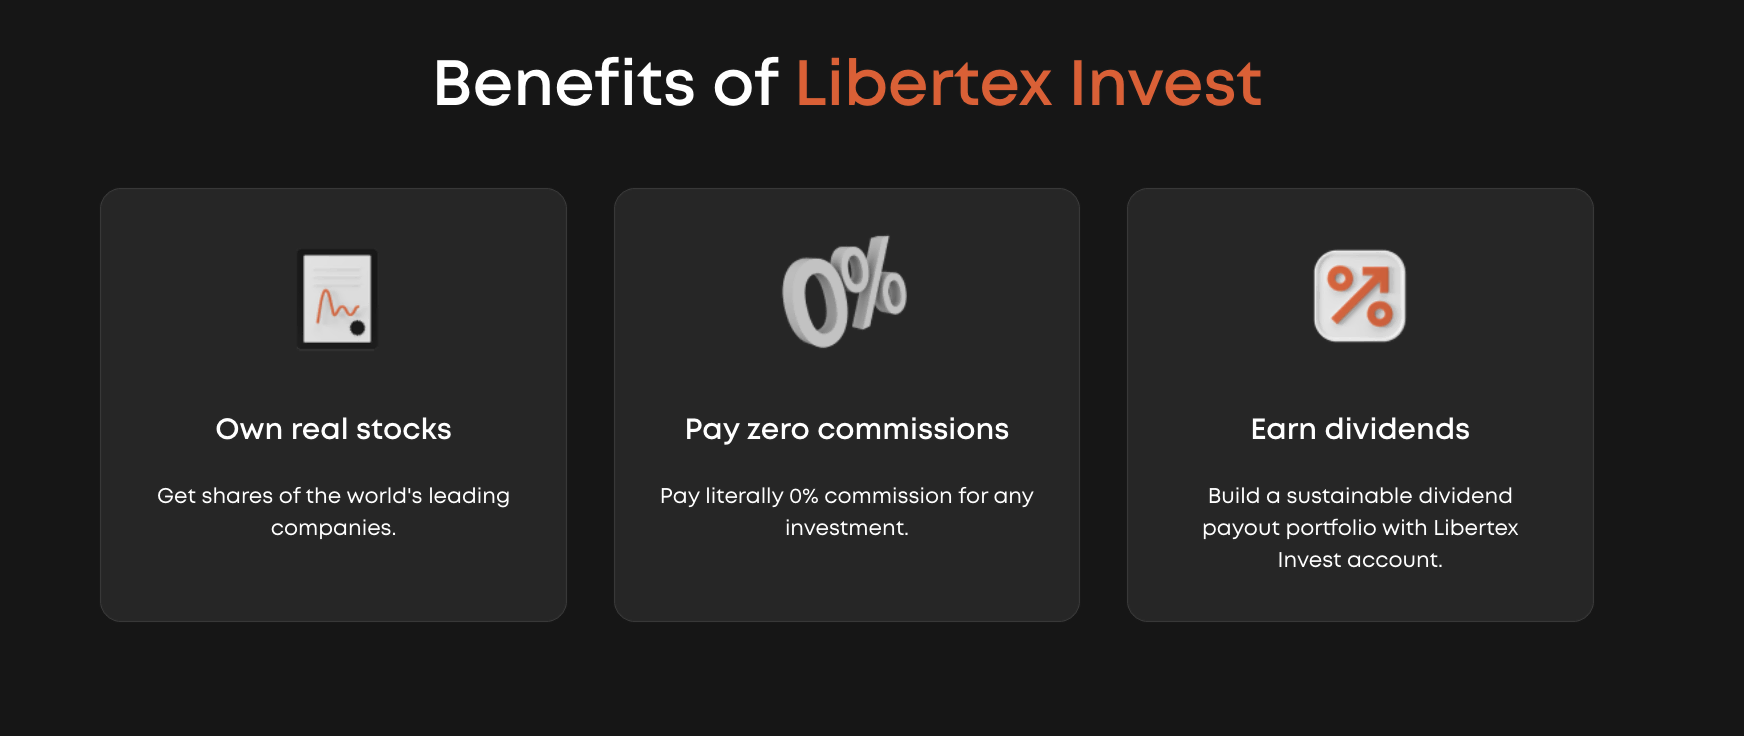 Az Libertex Invest előnyei